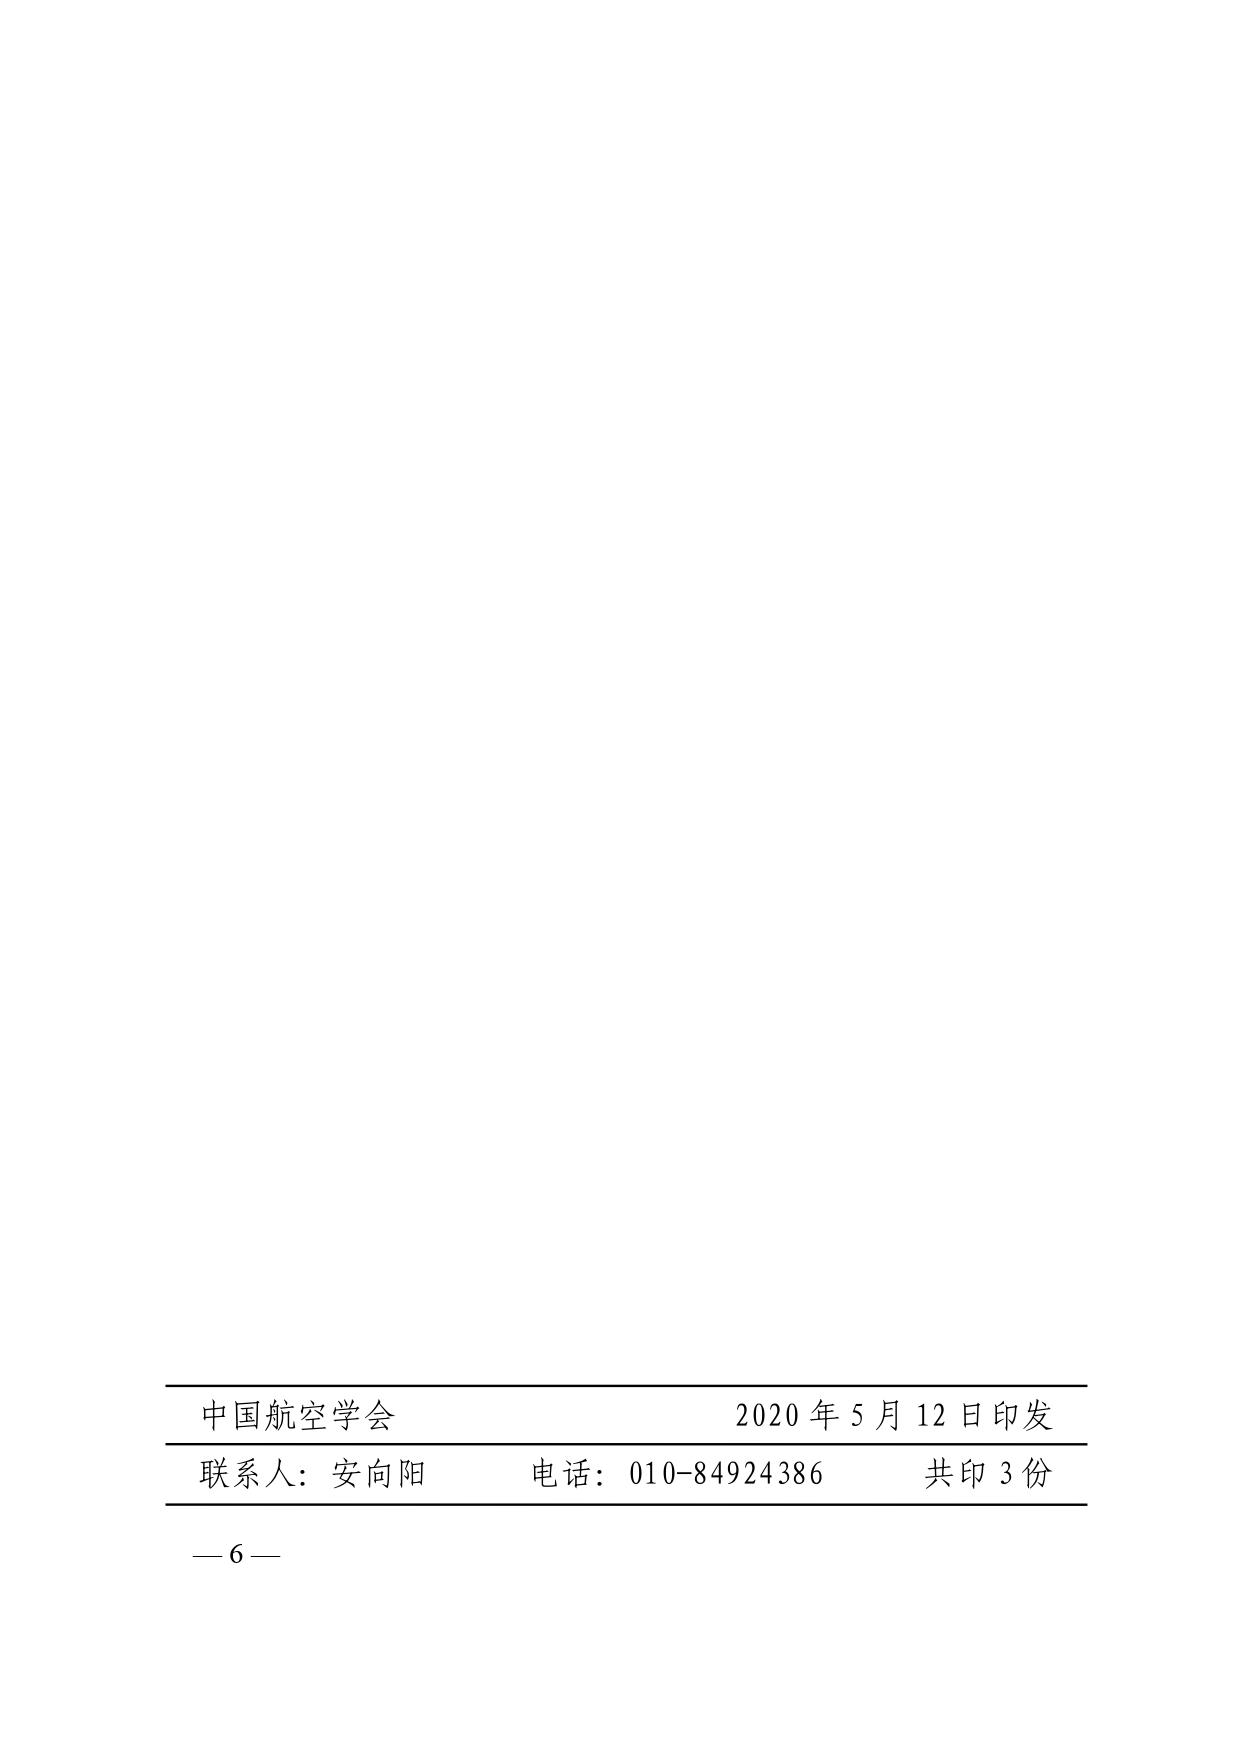 附件1.关于申报2020年度“中国航空学会科学技术奖”的通知_pages-to-jpg-0006.jpg